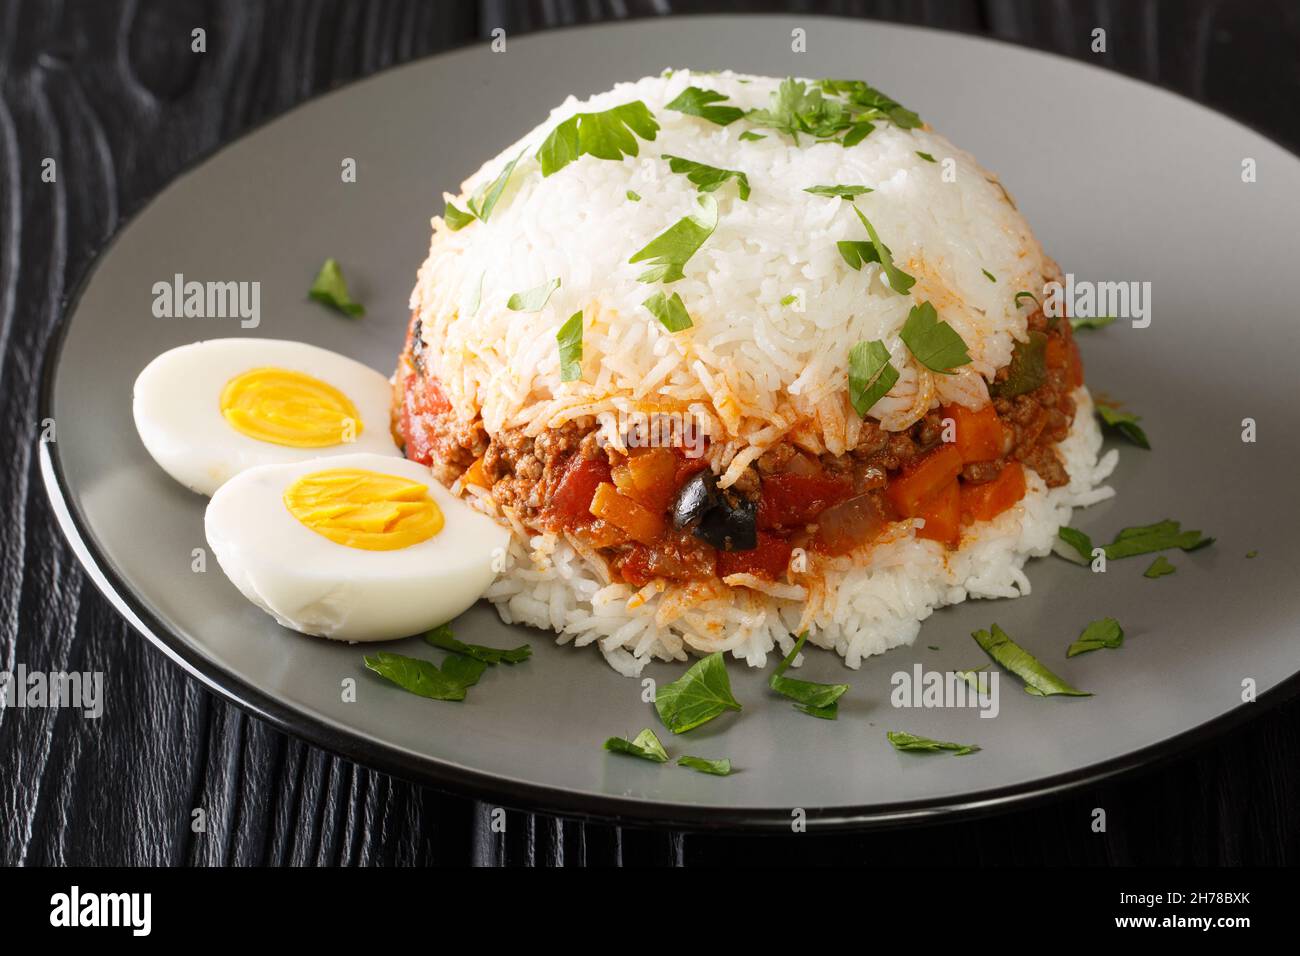 Il gustoso tapado Arroz è un piatto peruviano composto da riso, verdure, manzo macinato e uova bollite in primo piano nel piatto sul tavolo. Orizzontale Foto Stock